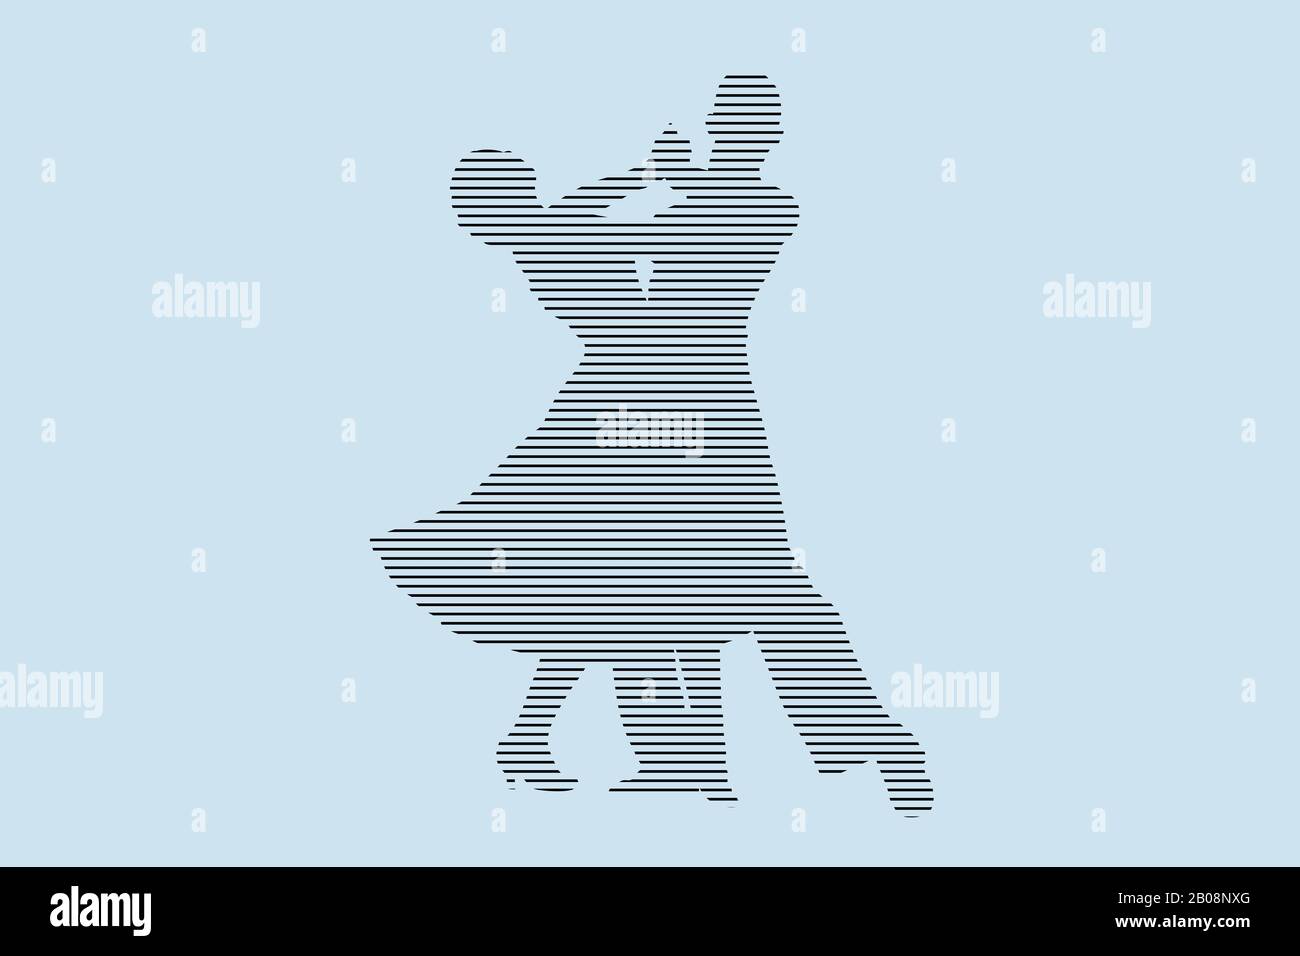 Tanzsaal Tänzerinnen Silhouette in schwarzen Linien auf blauem Hintergrund Stockfoto